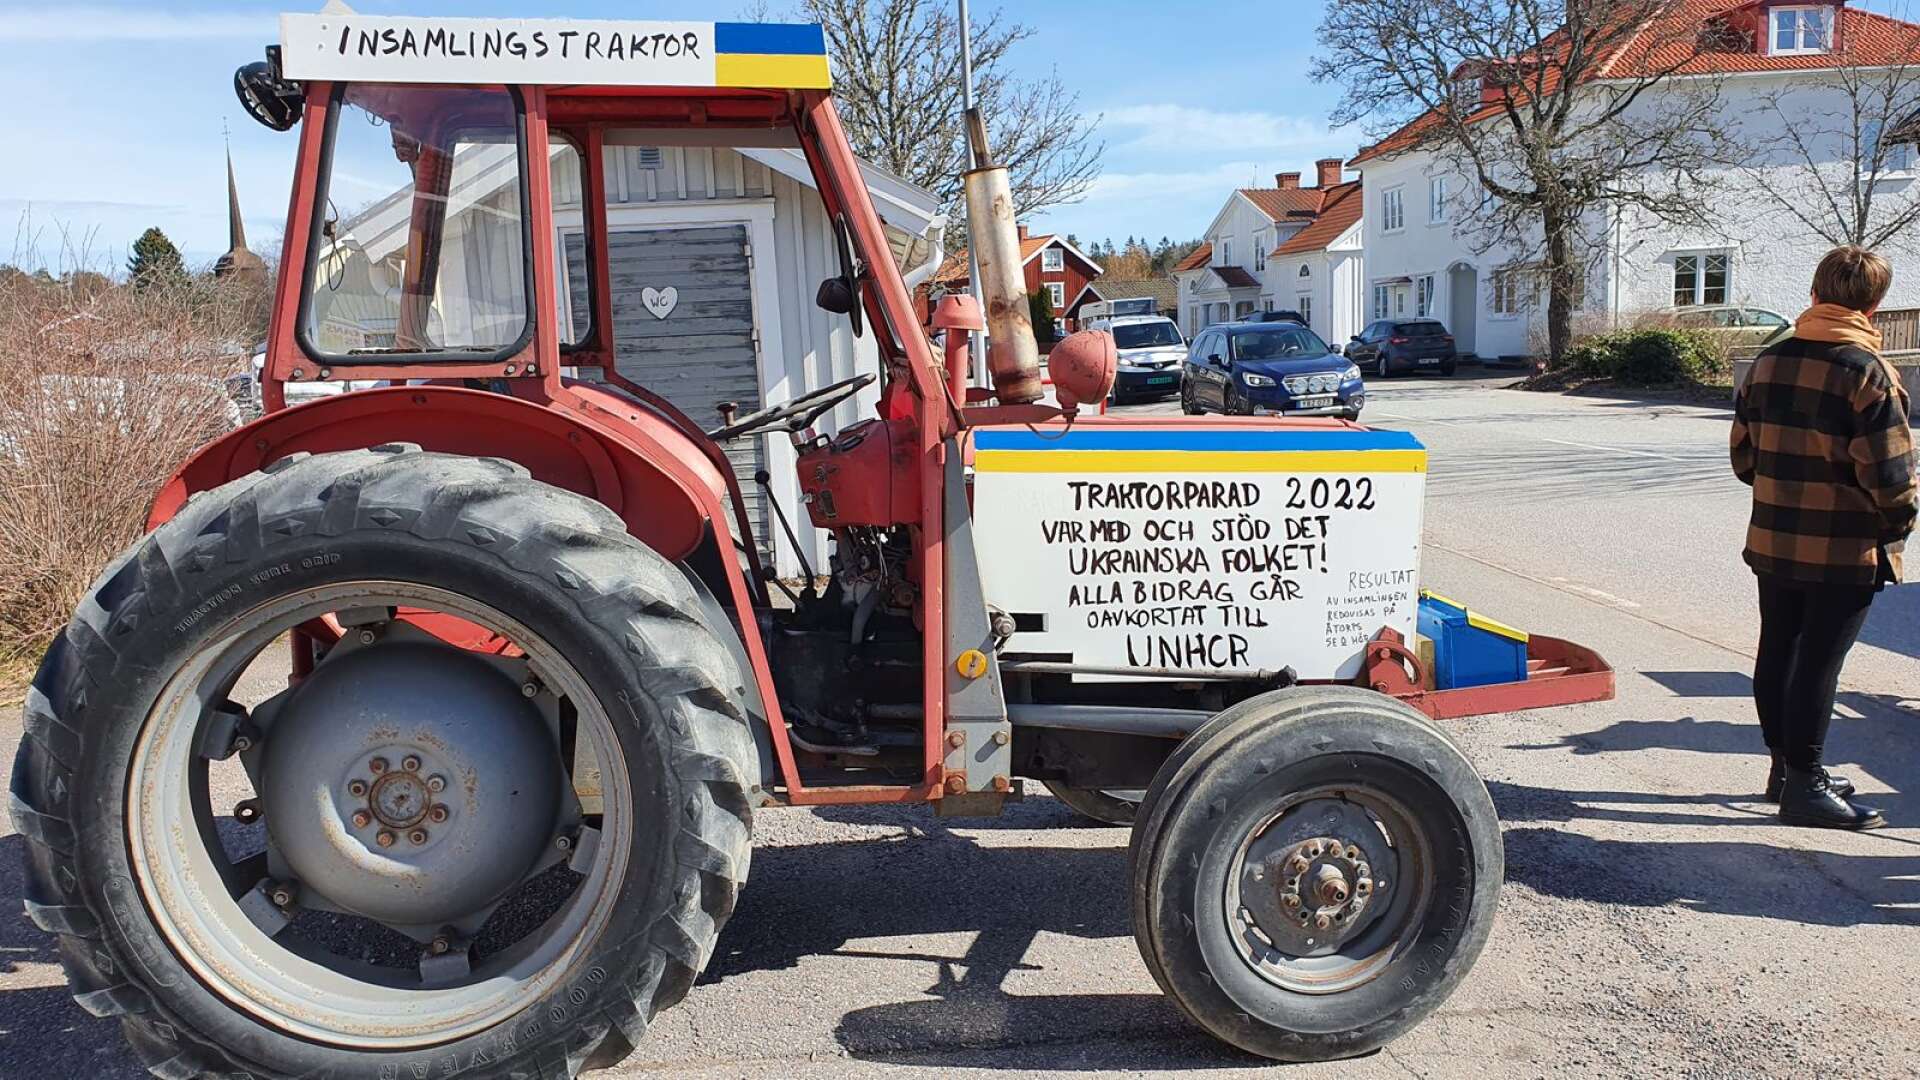 Utanför affären placerades en sparbössa i form av en traktor med såväl bössa som uppgifter om swishnummer på, till förmån för folket i Ukraina.